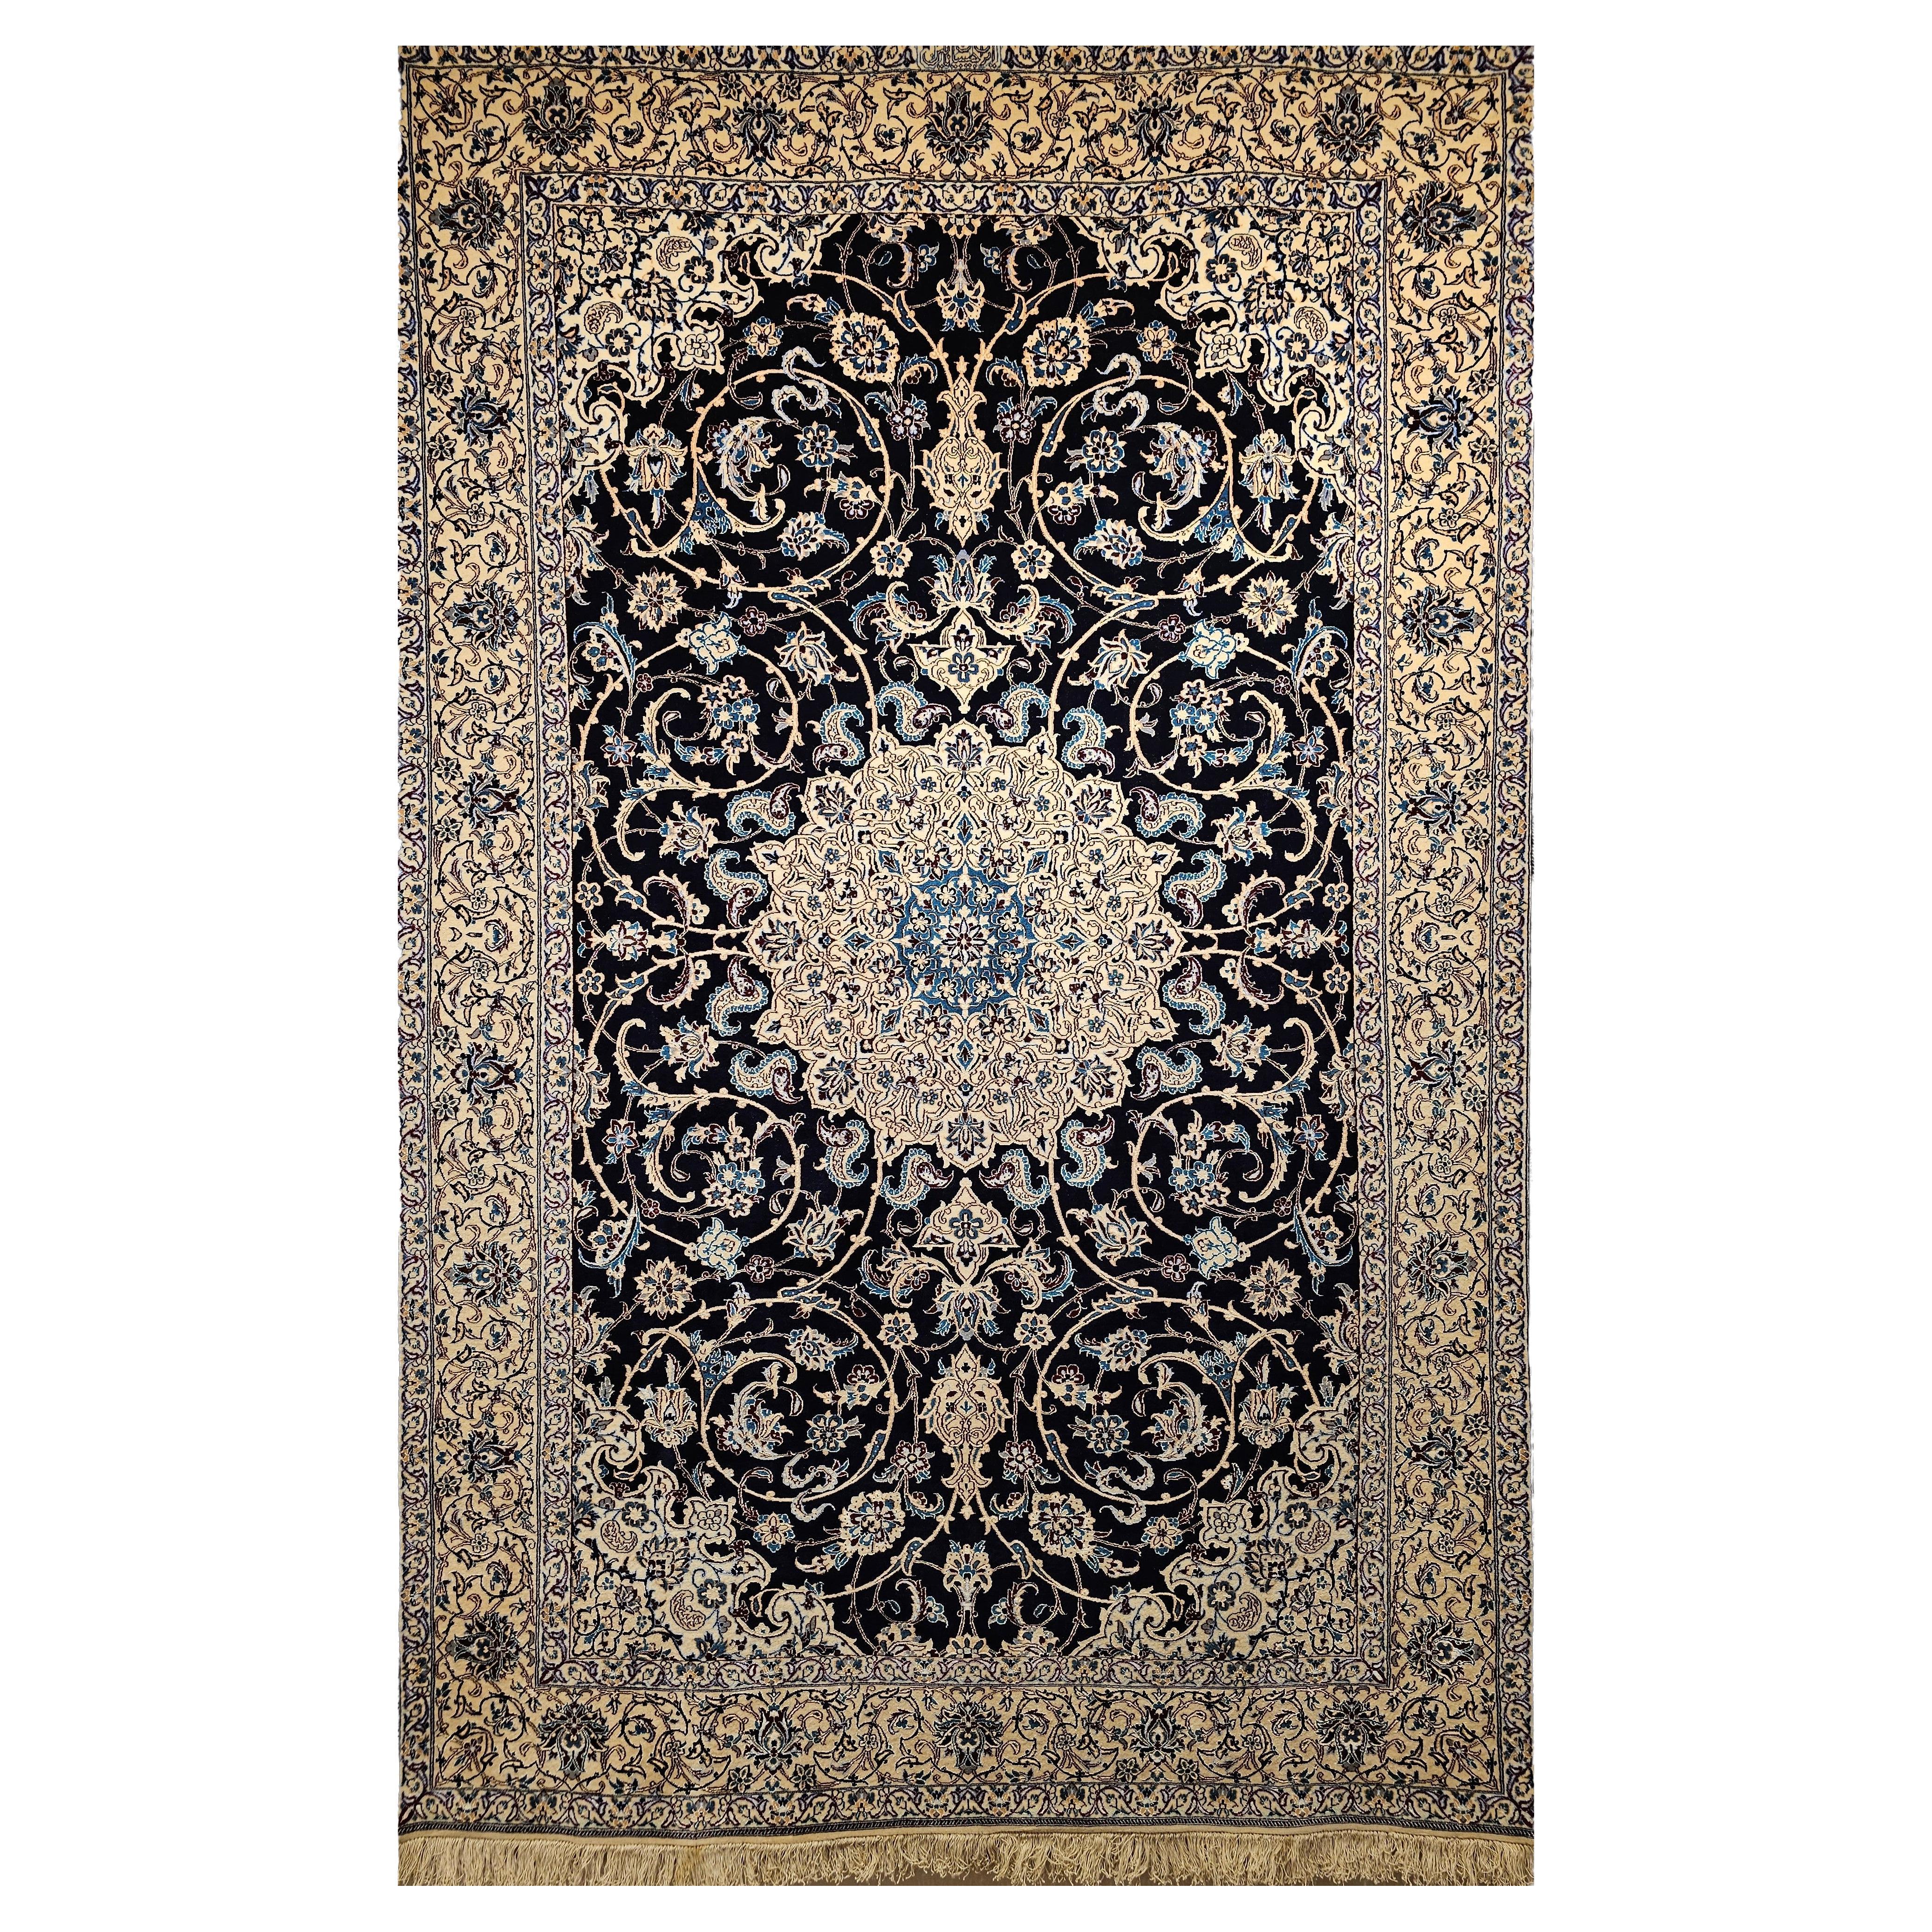 Persischer Nain Habibian Vintage-Teppich in Marineblau mit Blumenmuster in Elfenbein, Blau